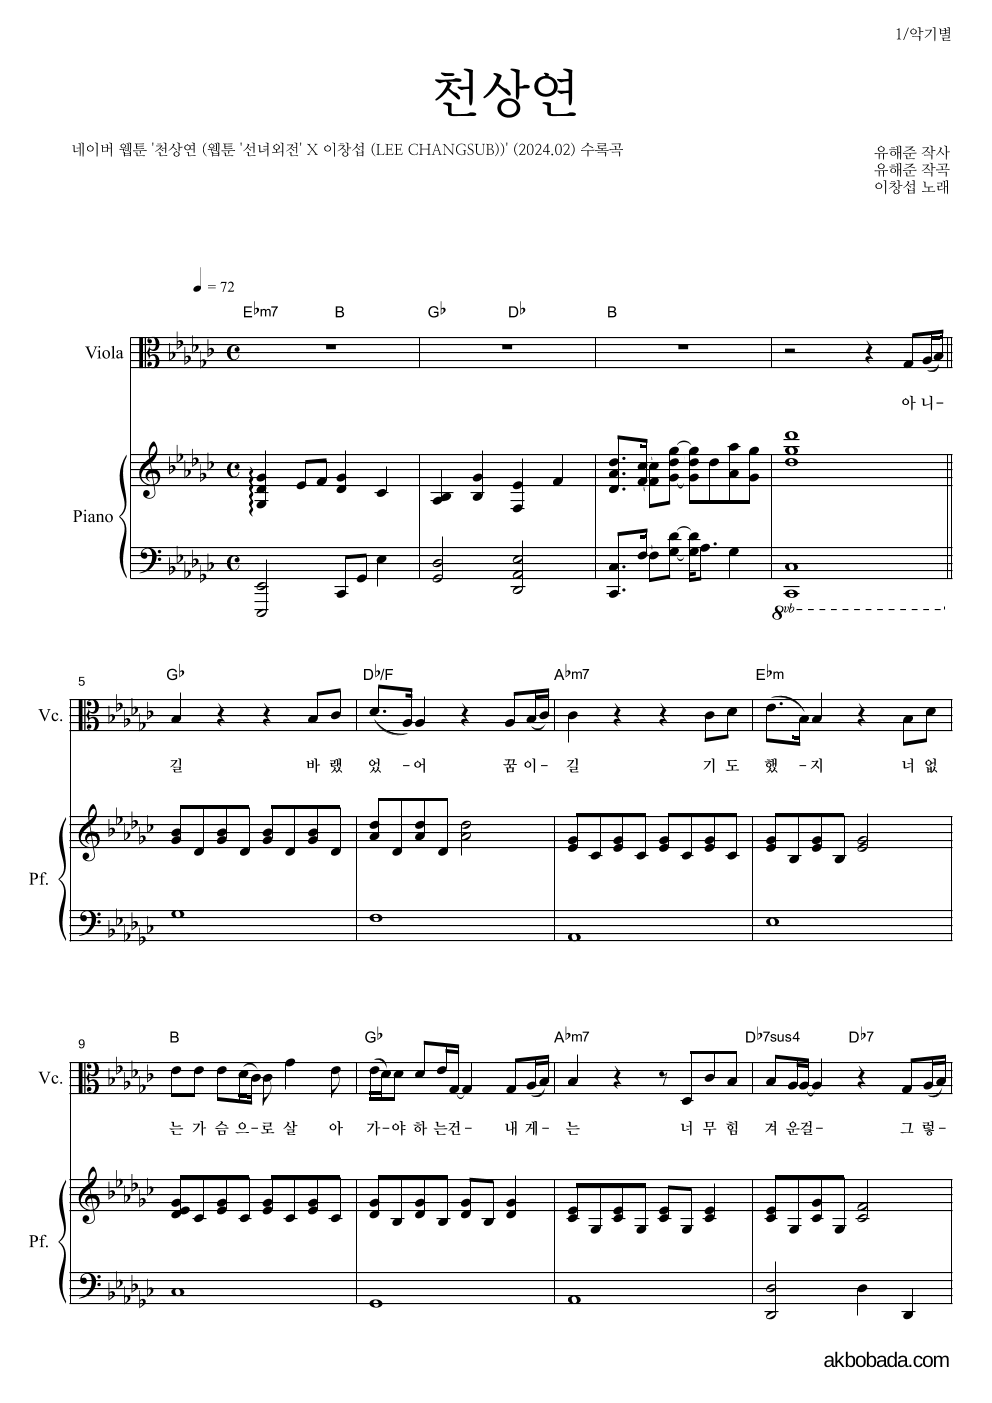 이창섭 - 천상연 비올라&피아노 악보 